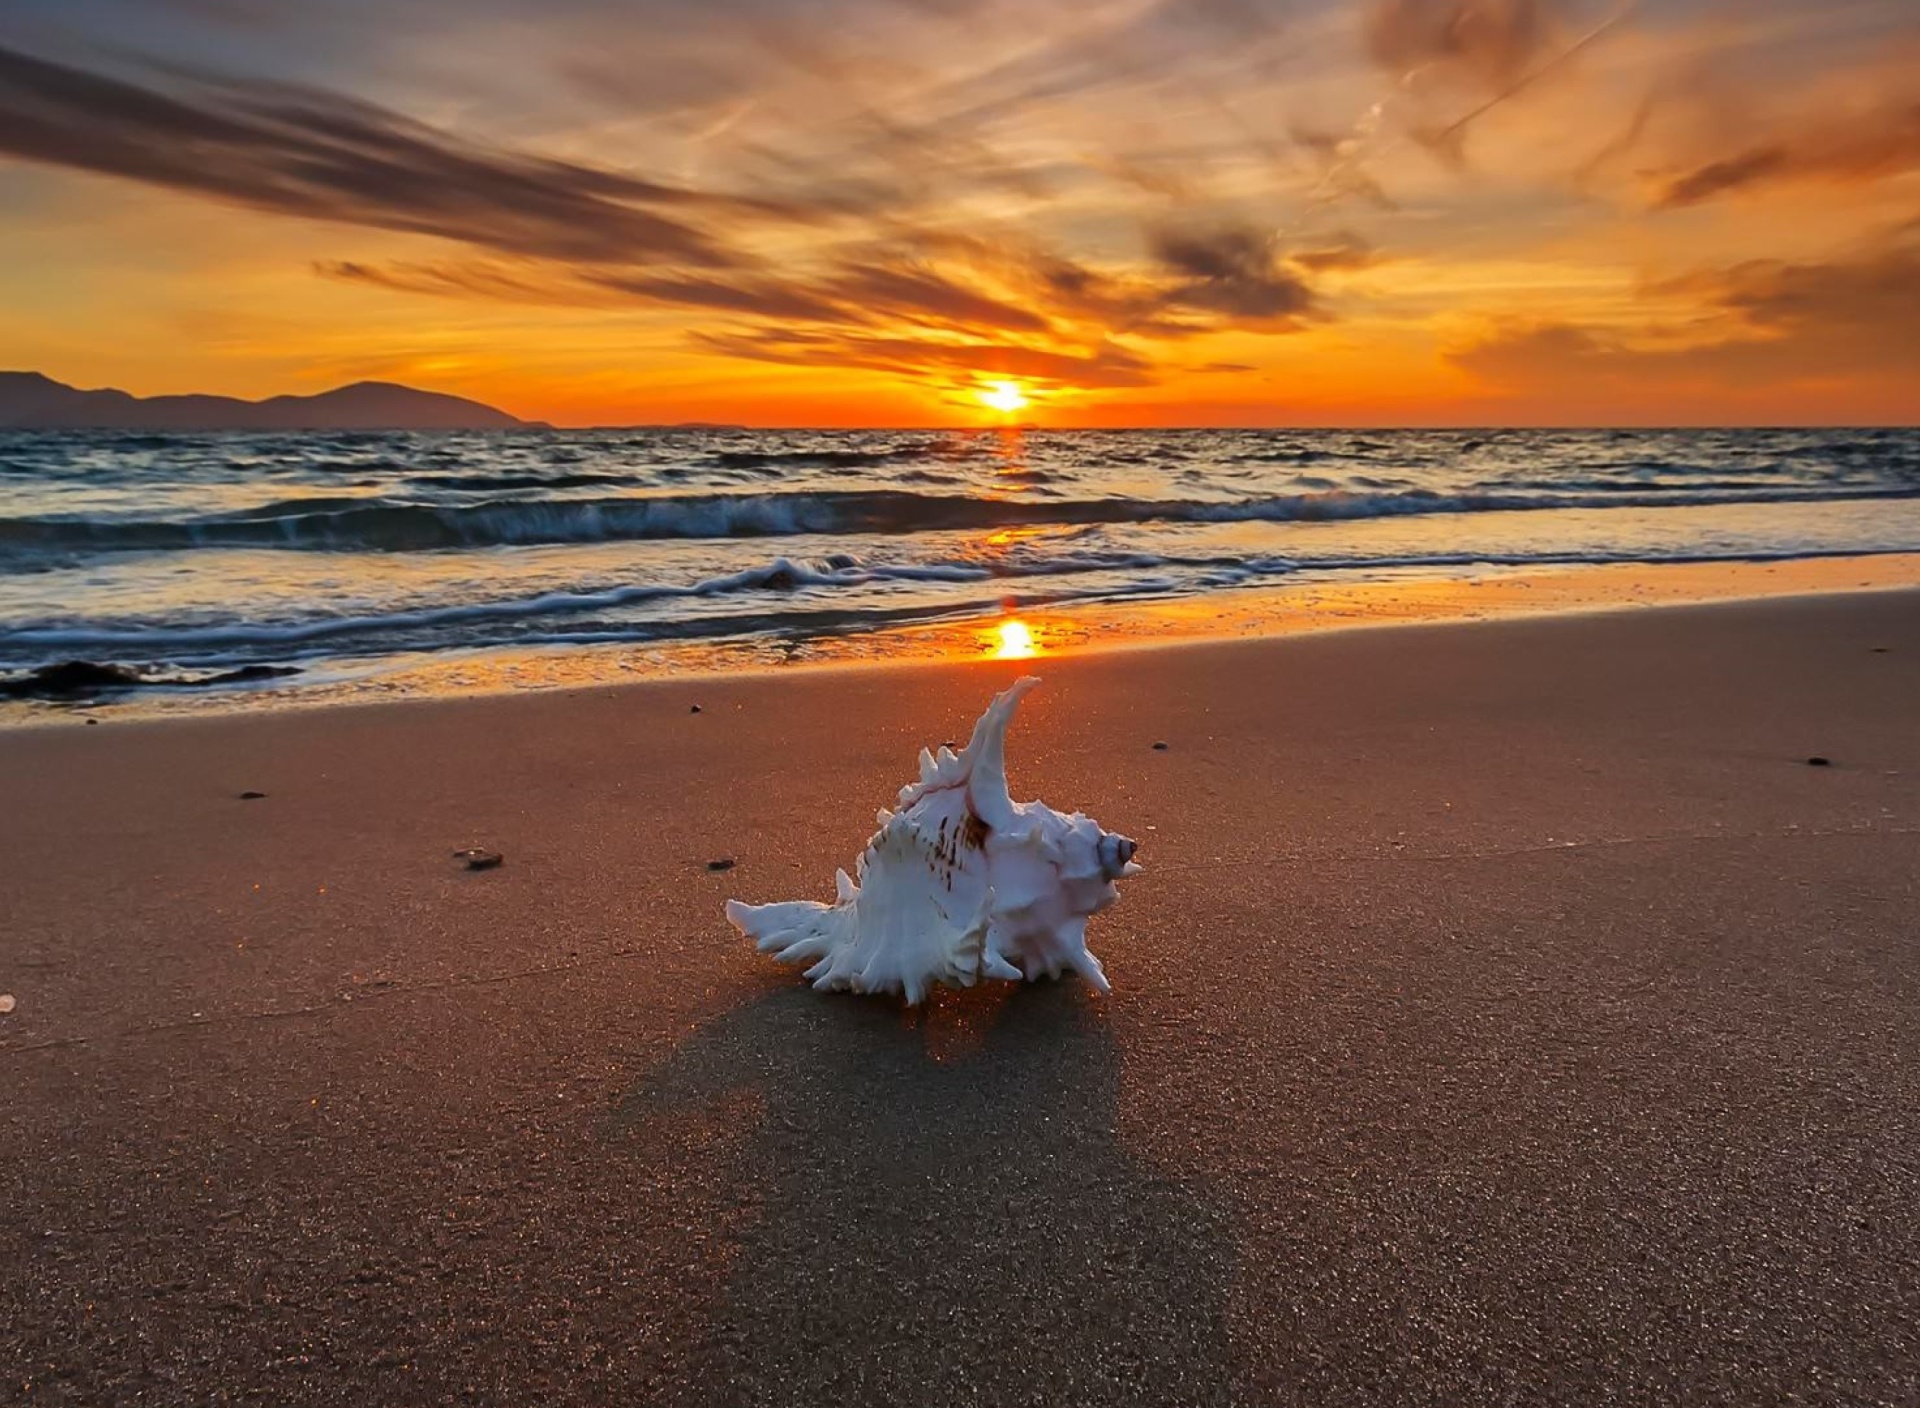 Sfondi Sunset on Beach with Shell 1920x1408